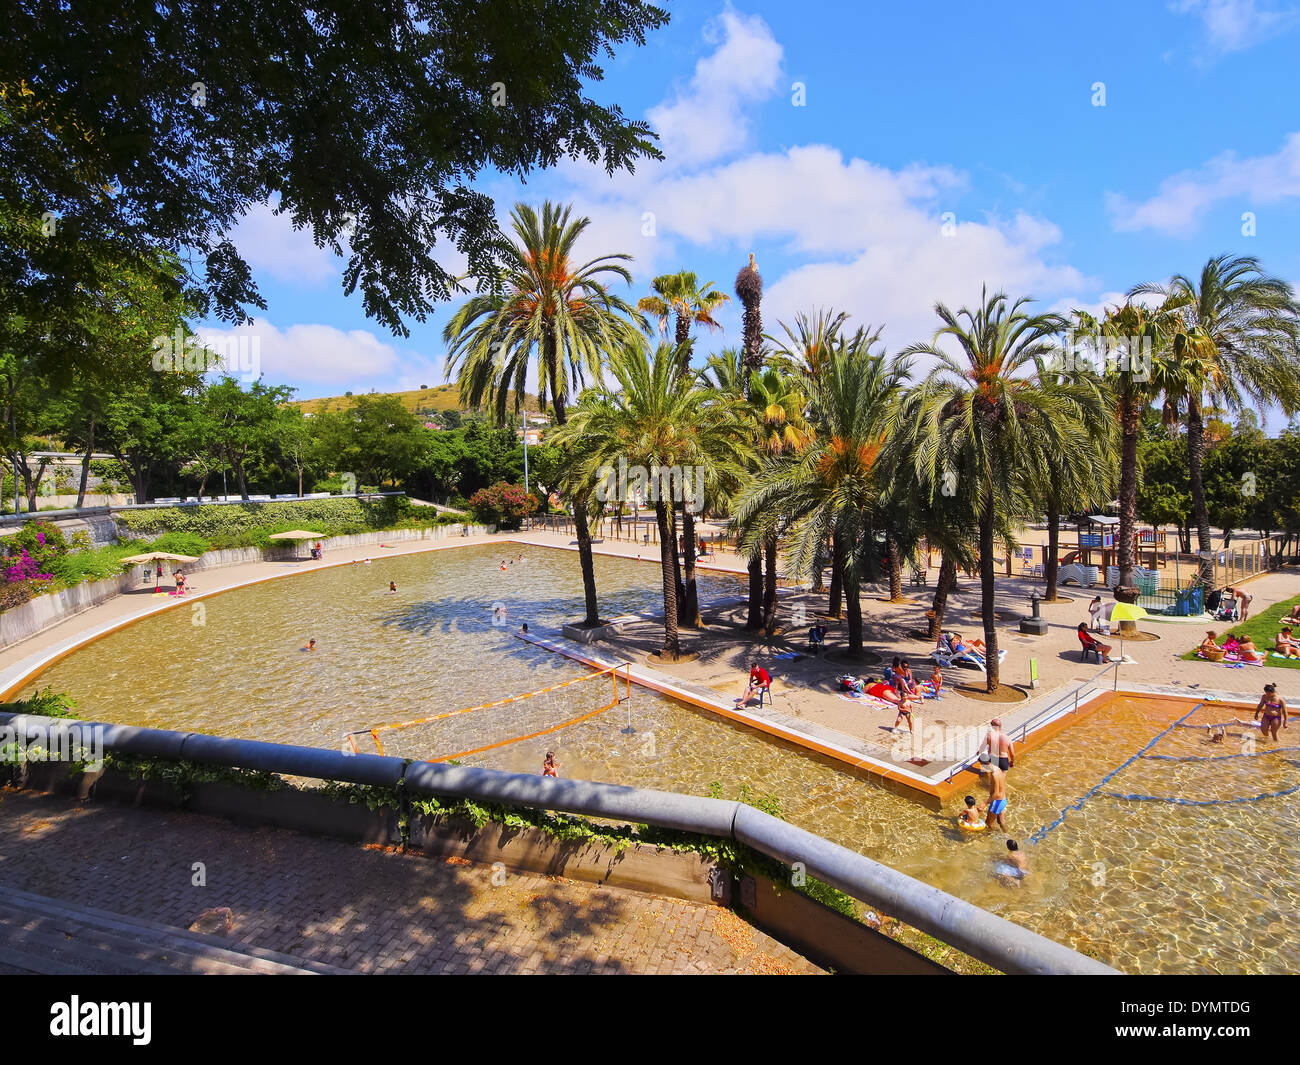 Parc de la Creueta del Coll in Barcelona, Catalonia, Spain Stock Photo